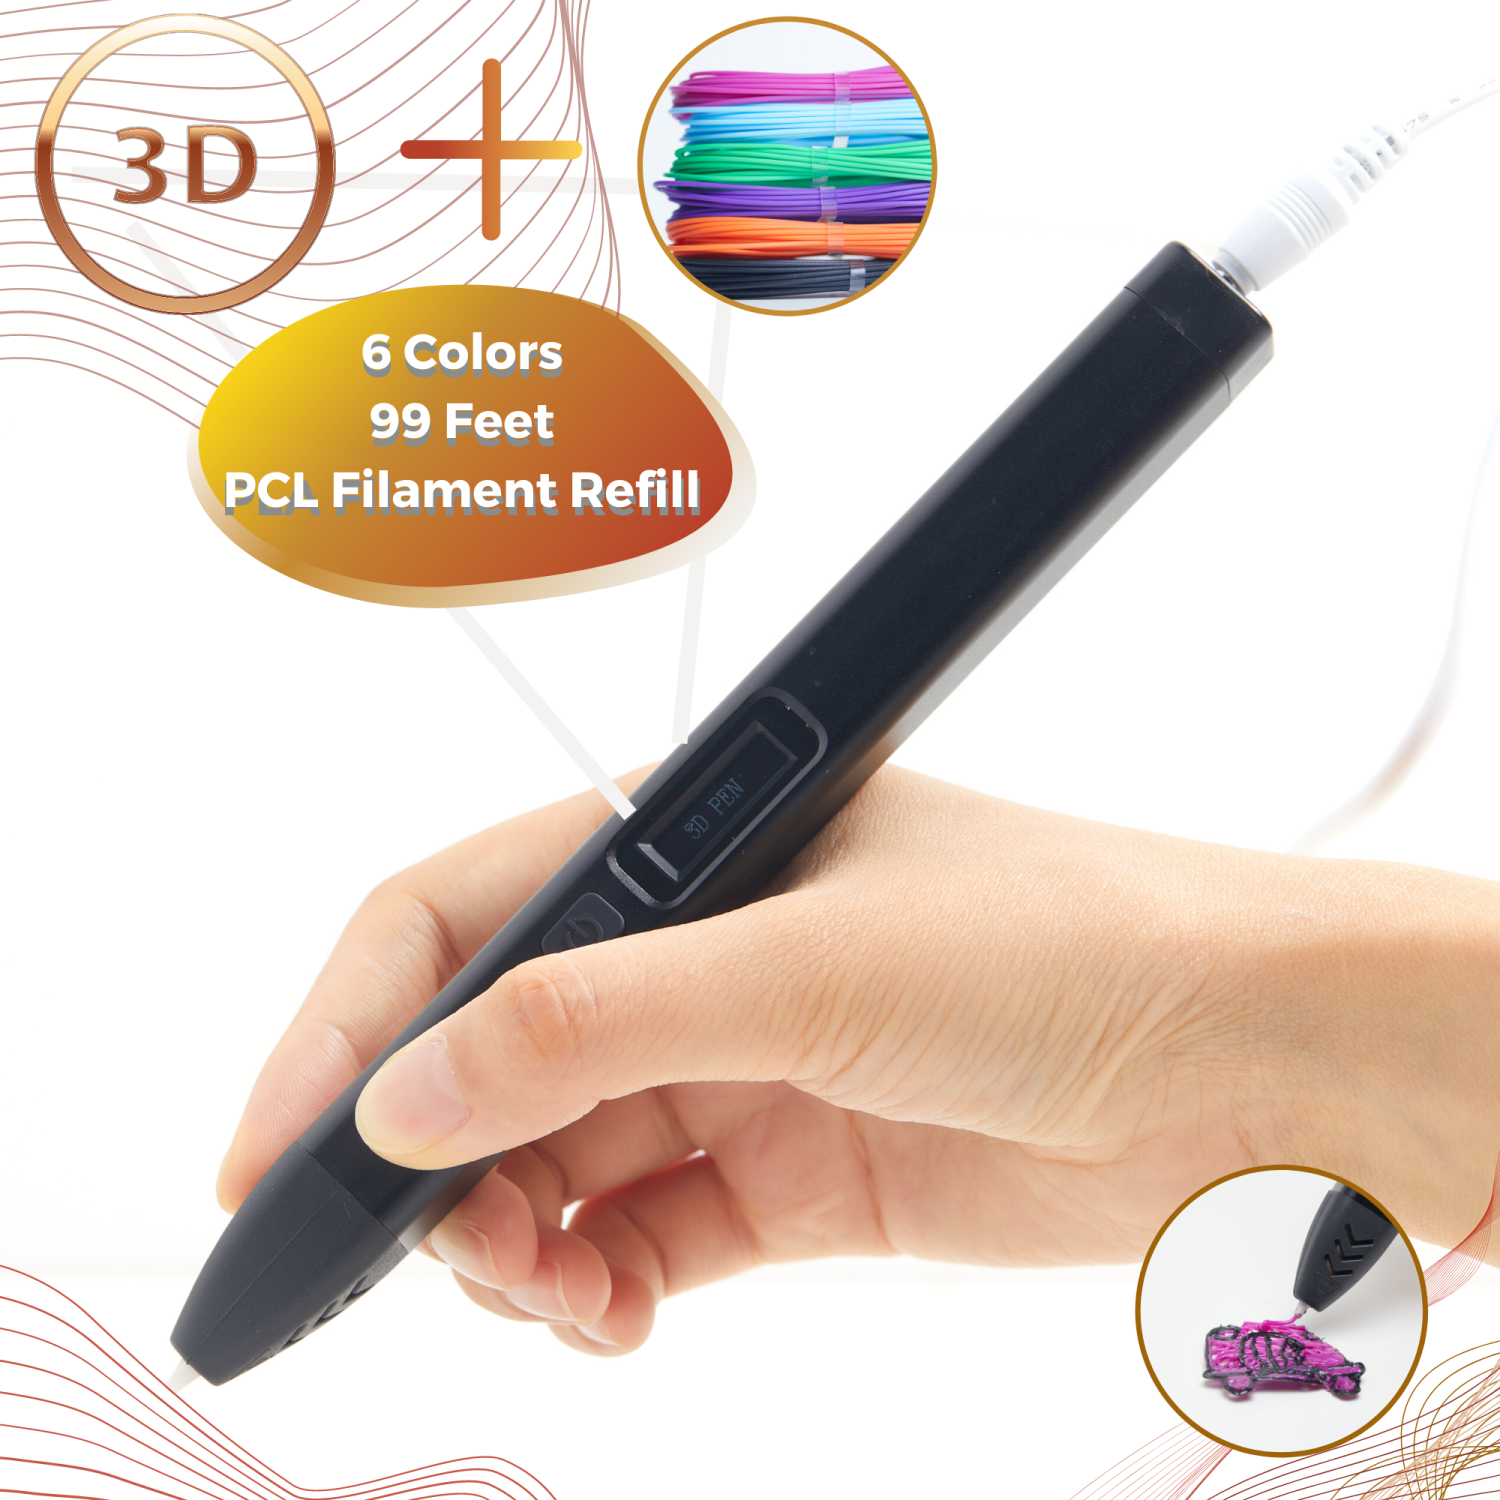 stylo 3D pour enfants et adultes Stylo 3D avec 9 couleurs de filament Pla stylo d'impression 3D compatible avec PLA et écran LCD température / vitesse réglable 